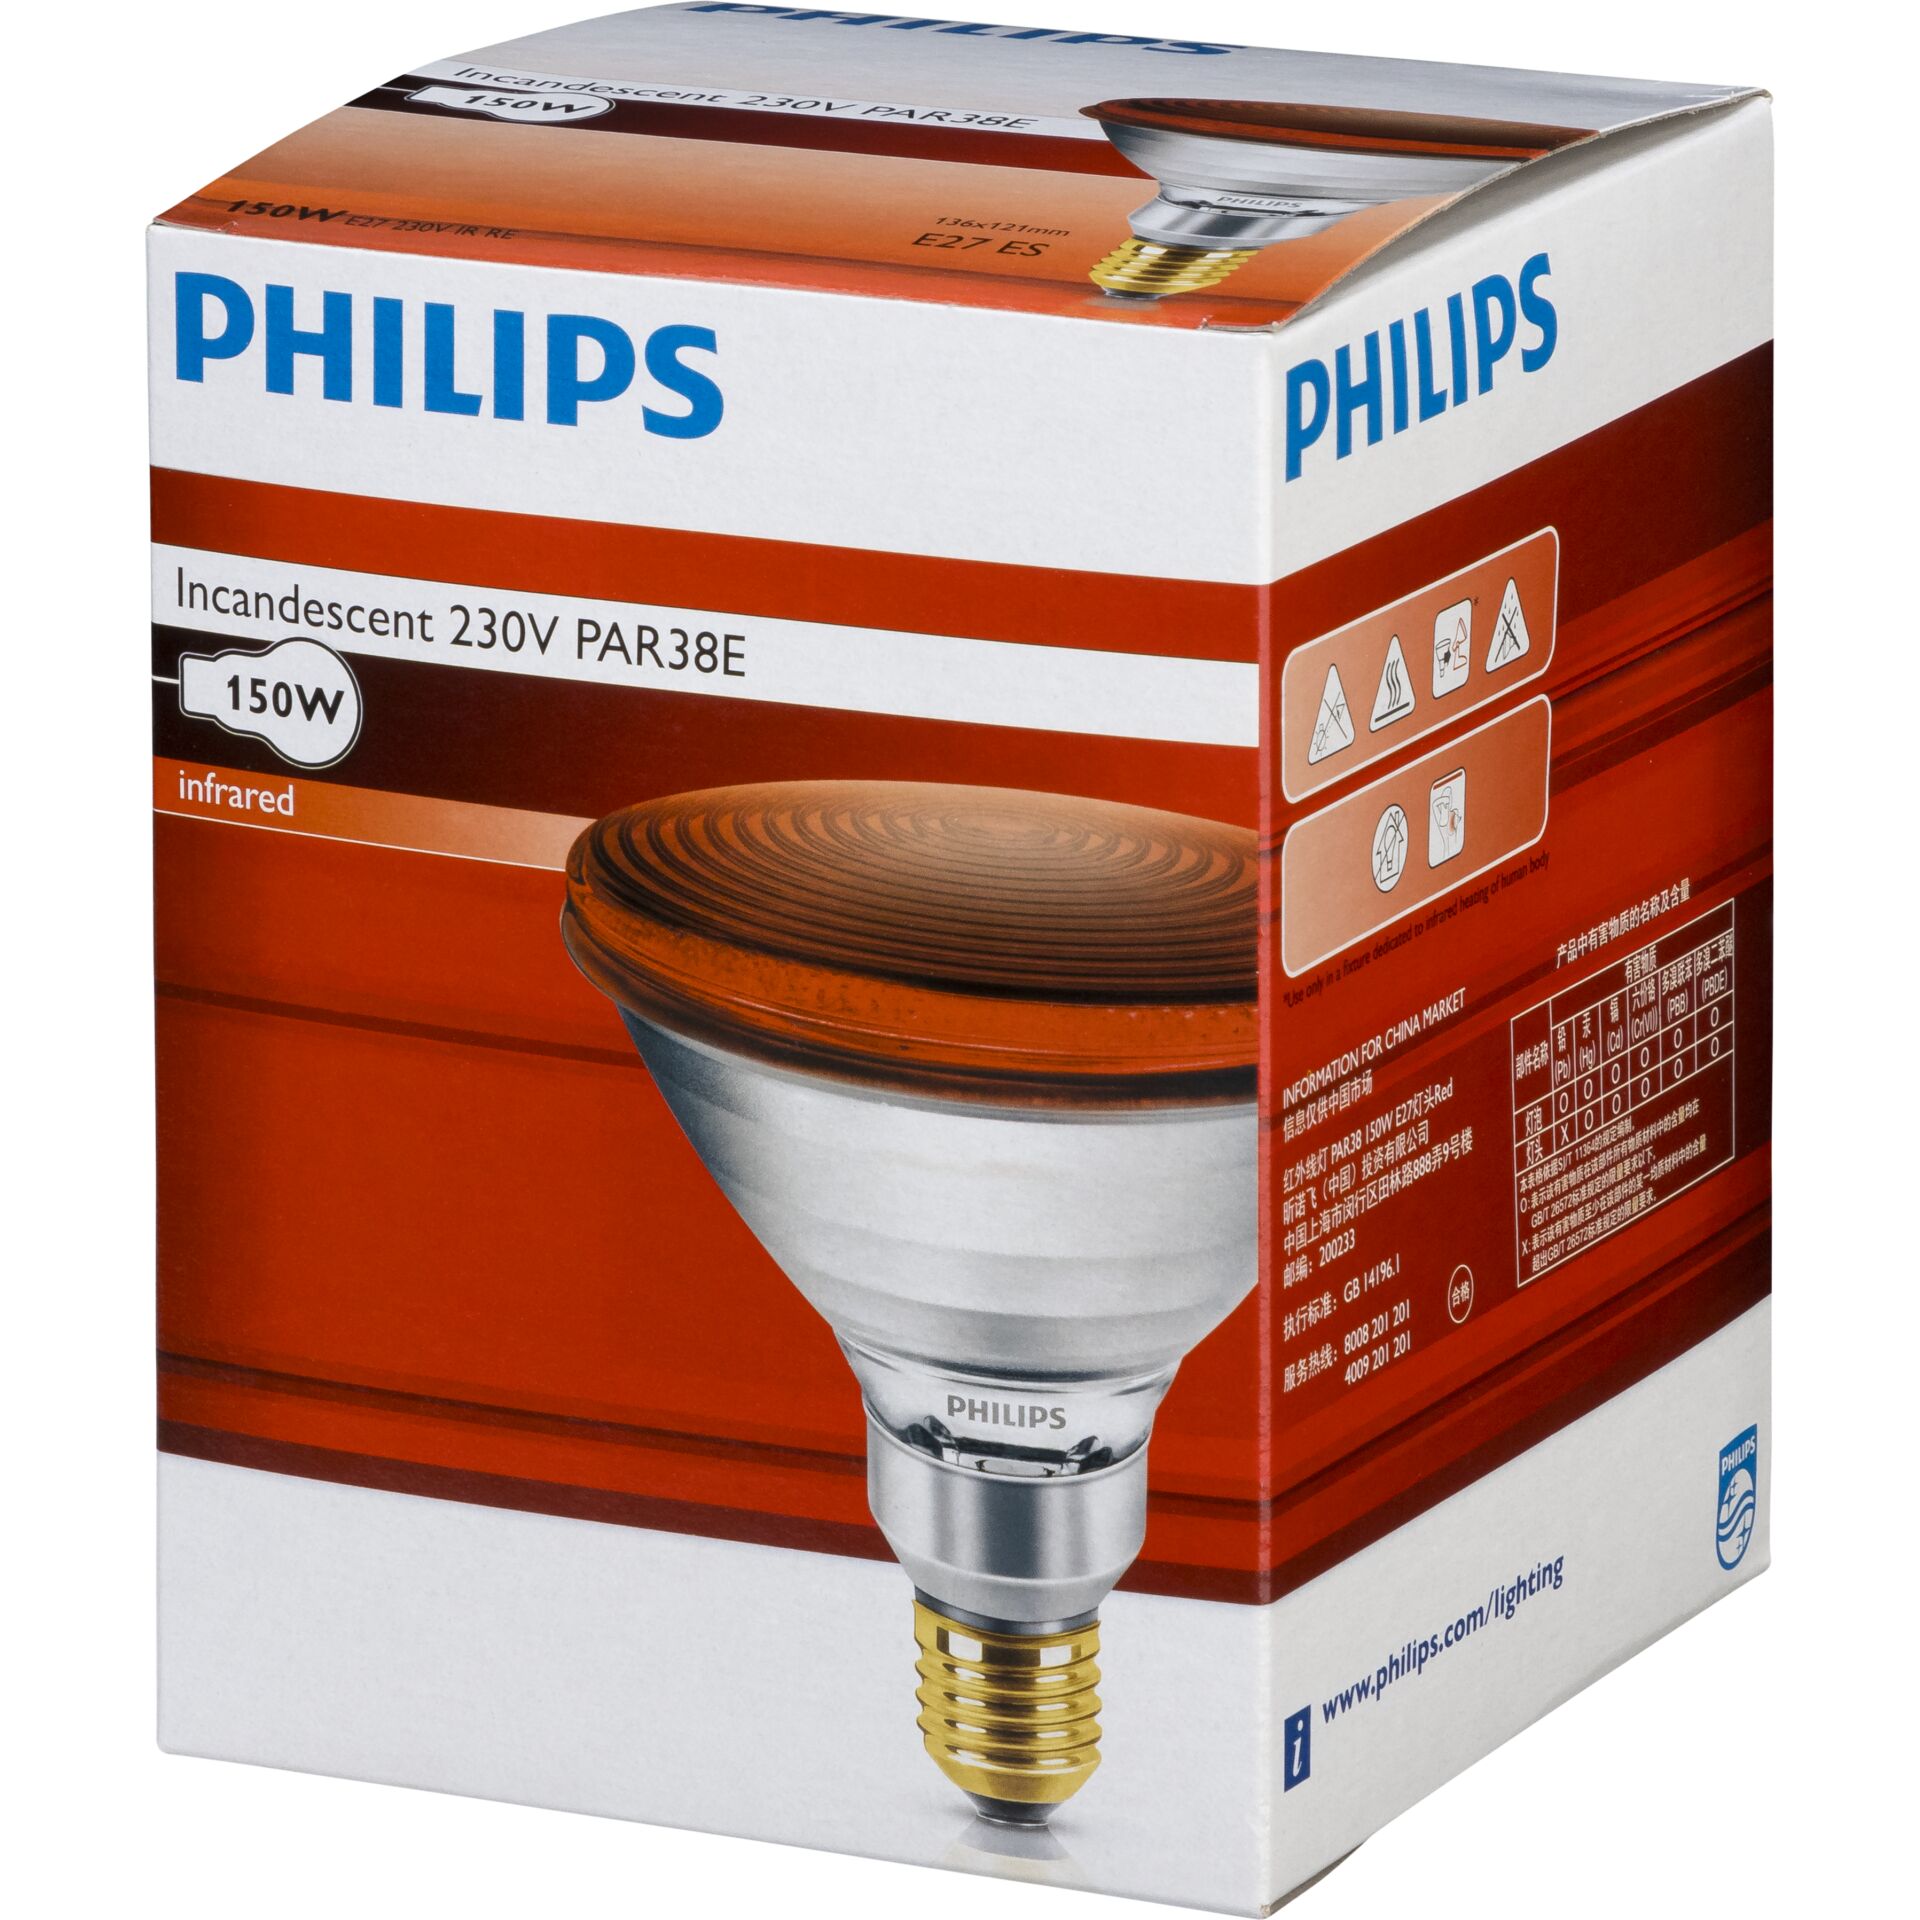 Philips lampada infrar. PAR38 IR 150W E27 230V rosso